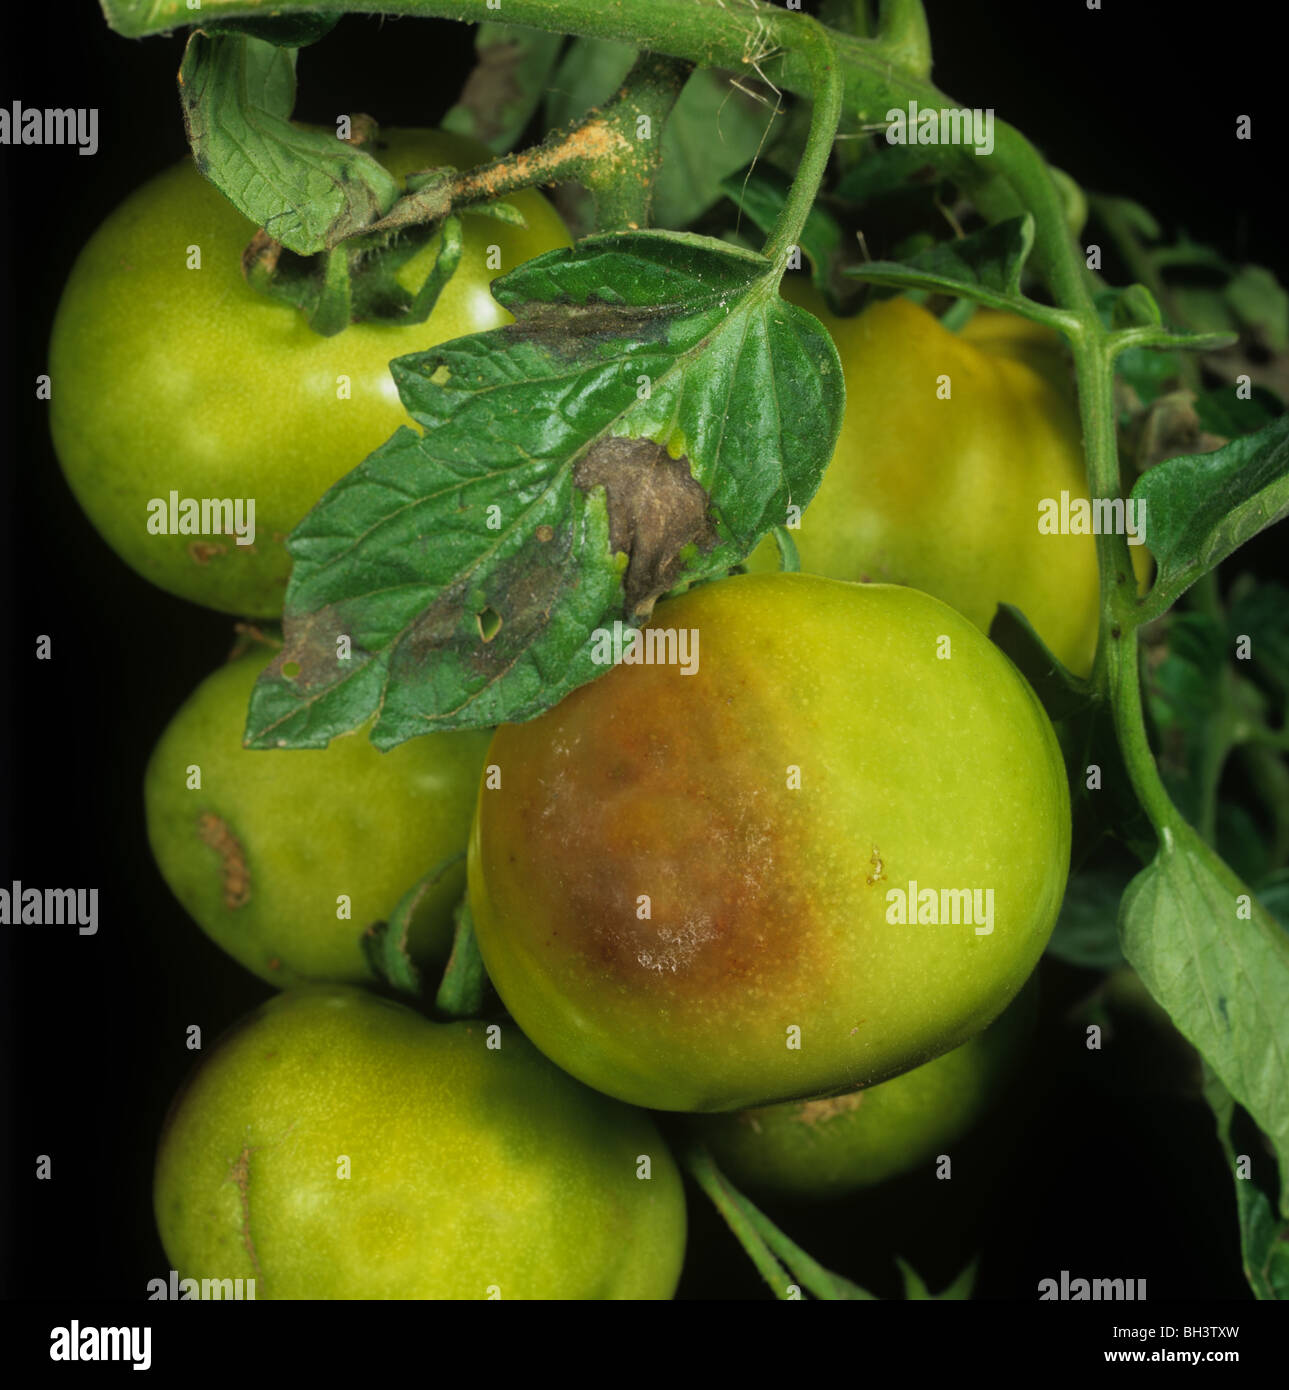 Tomaten die Kraut-und Knollenfäule (Phytophthora Infestans) Schäden an unreifen Gewächshaus Tomaten Stockfoto